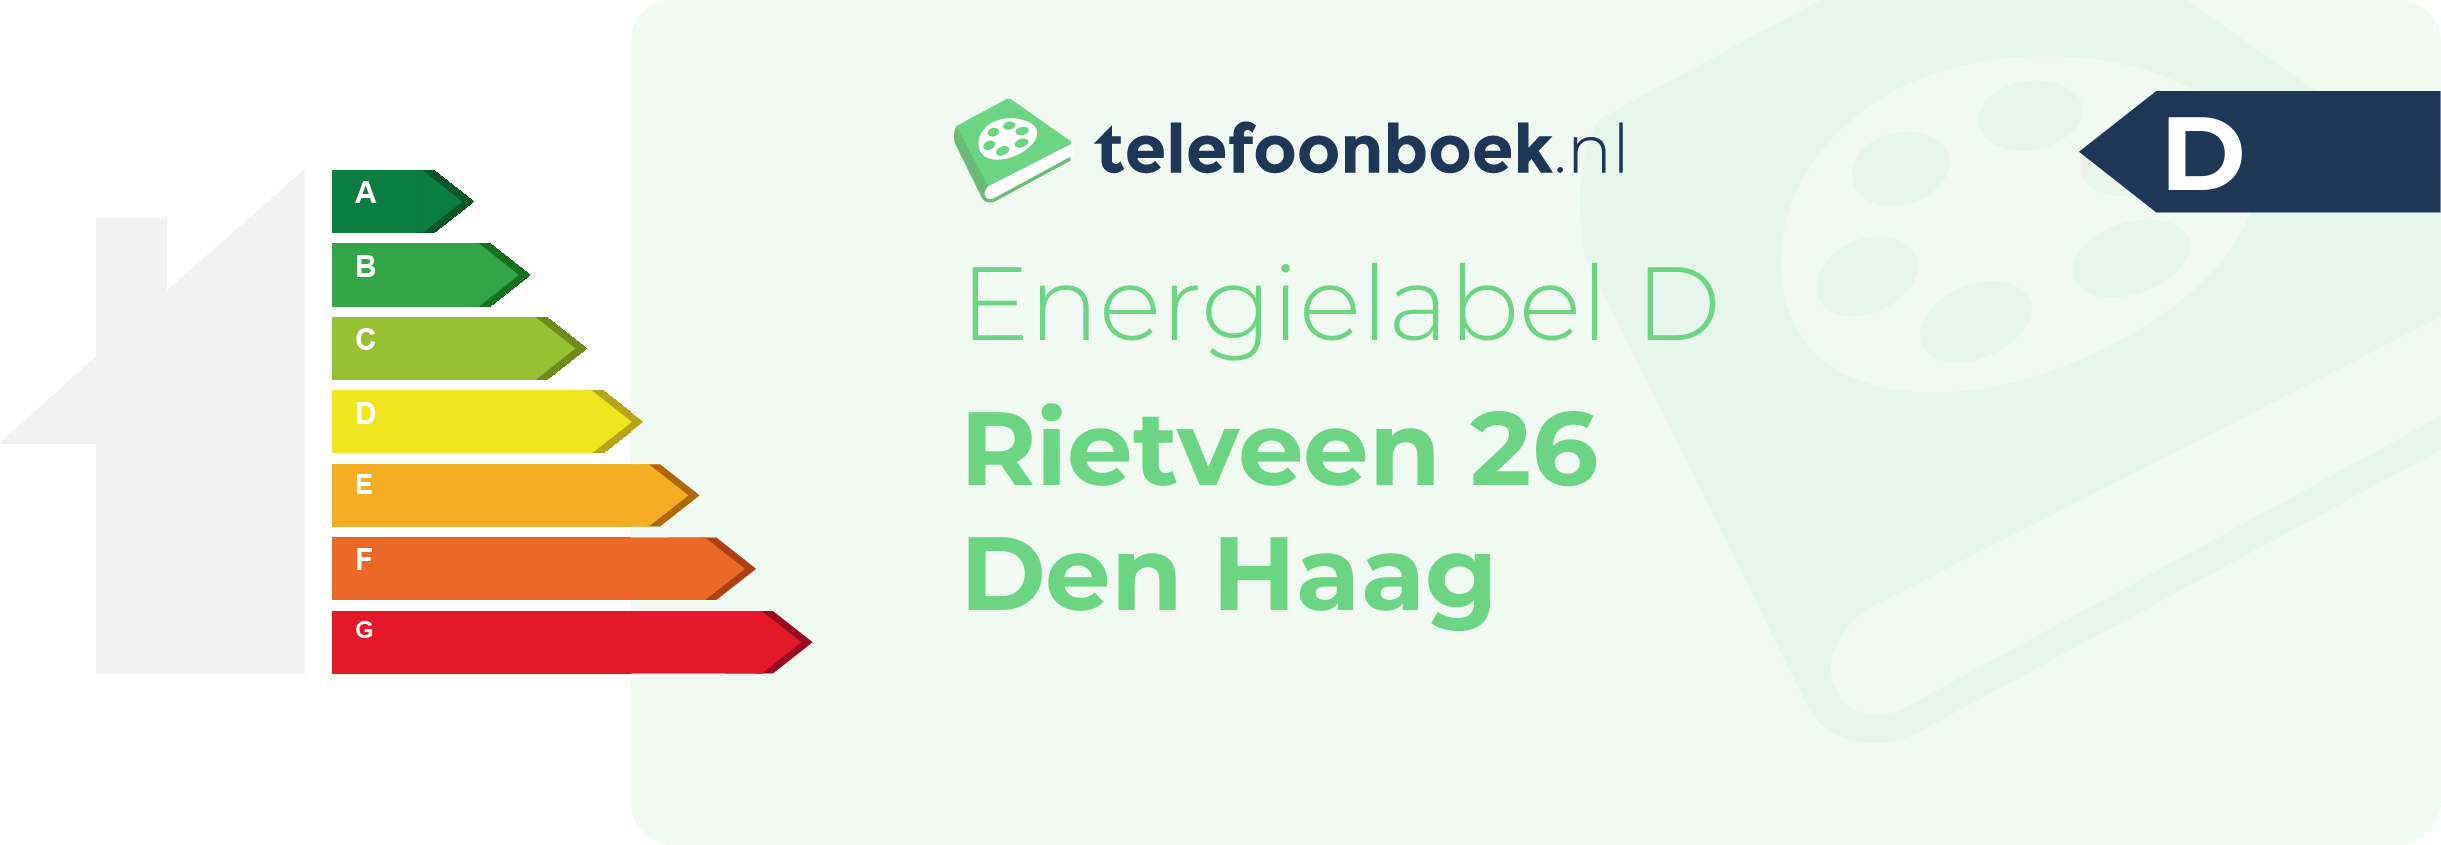 Energielabel Rietveen 26 Den Haag